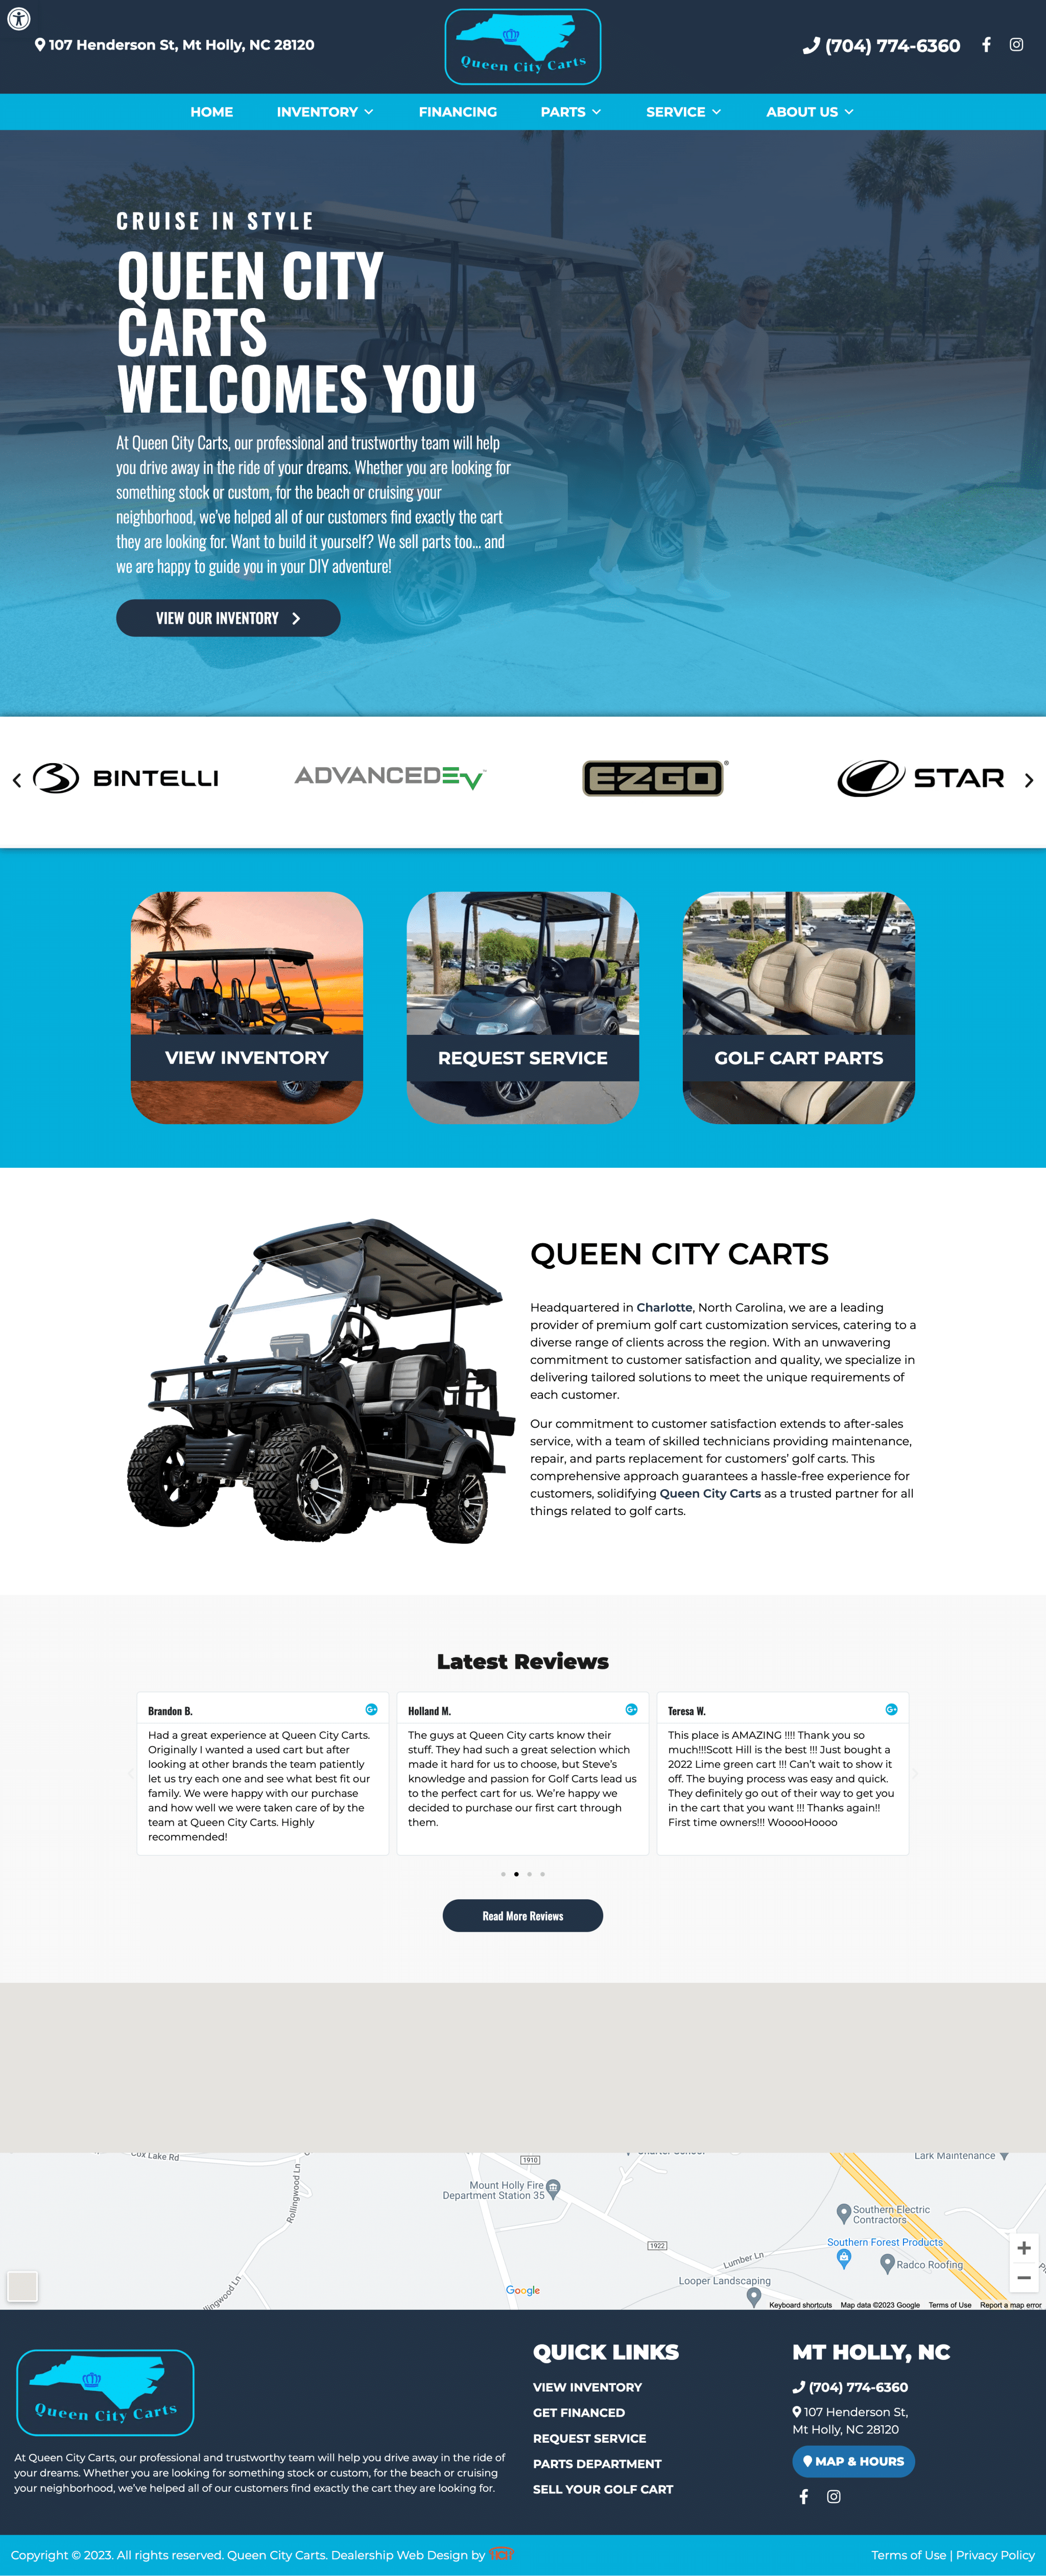 queen city carts